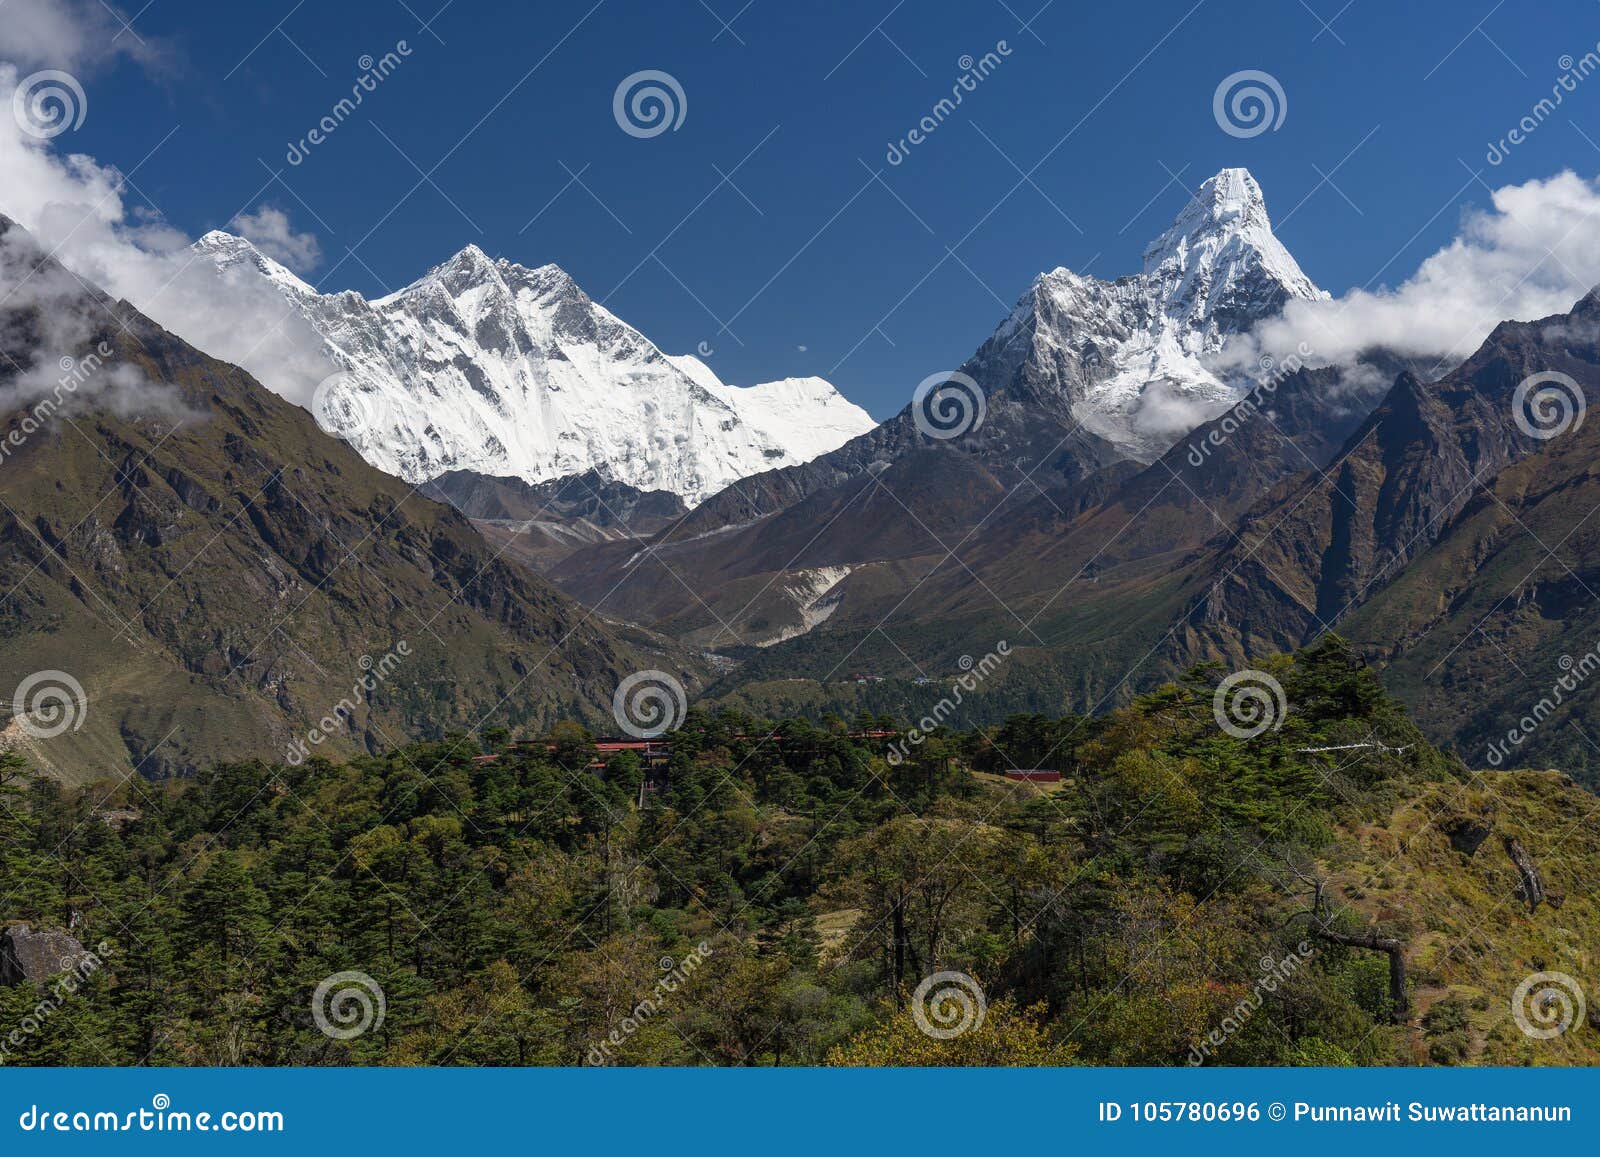 Vue de crête de montagne d'Everest, de Lhotse, et d'Ama Dablam, enregistrement d'Everest